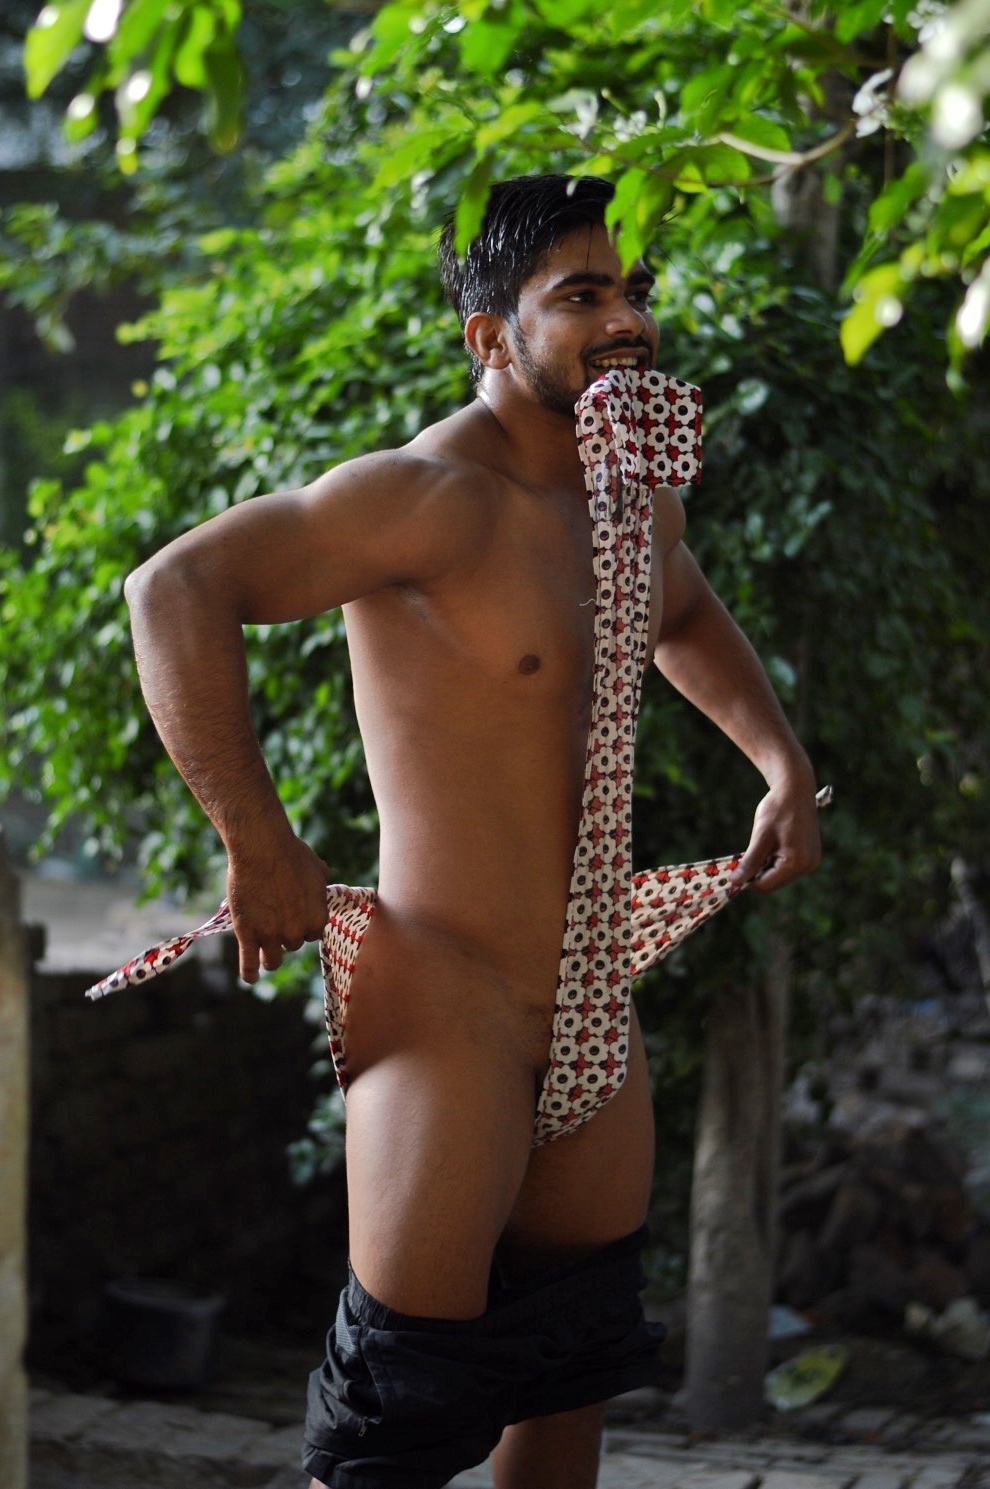 Nude gay indian - 🧡 Beautiful nude exposure of a Desi gay in Mumbai - Indi...